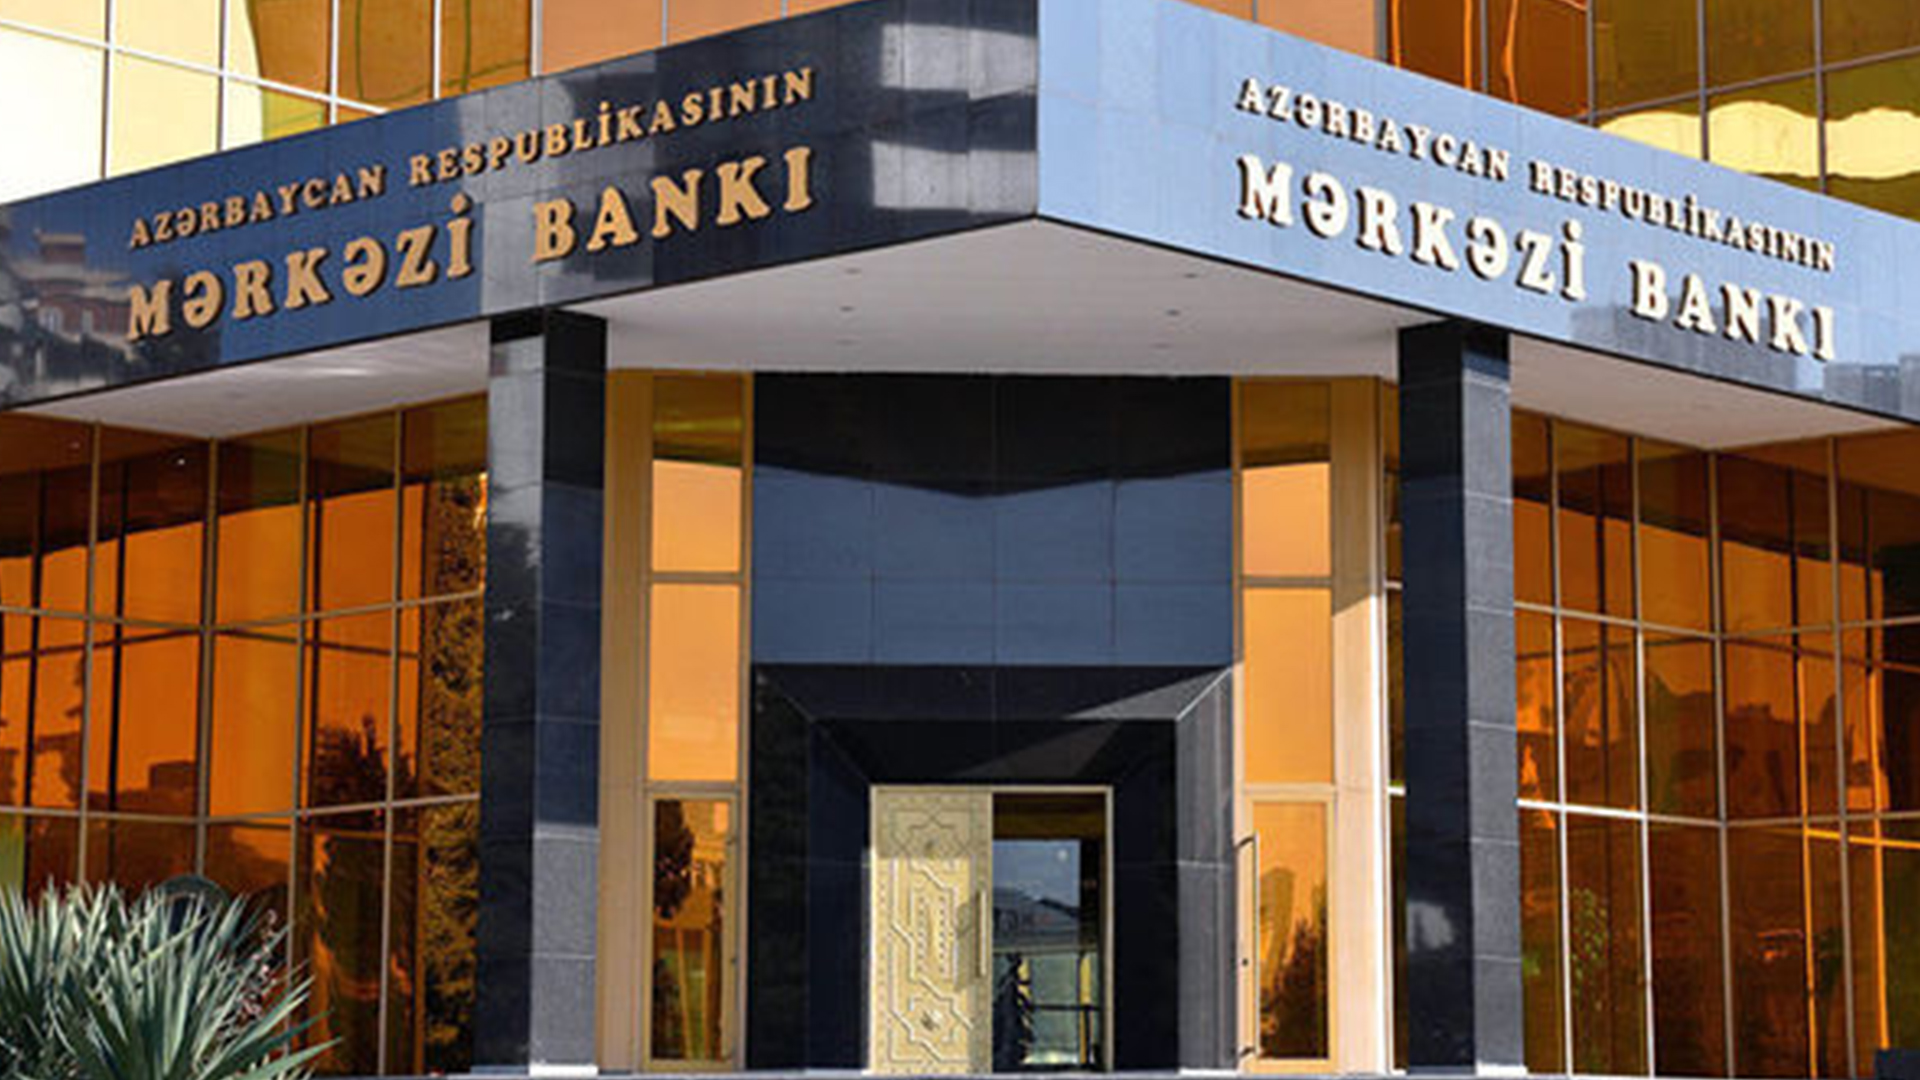 Mərkəzi Bank kredit faizlərinin aşağı salınması üzərində işləyir - RƏSMİ